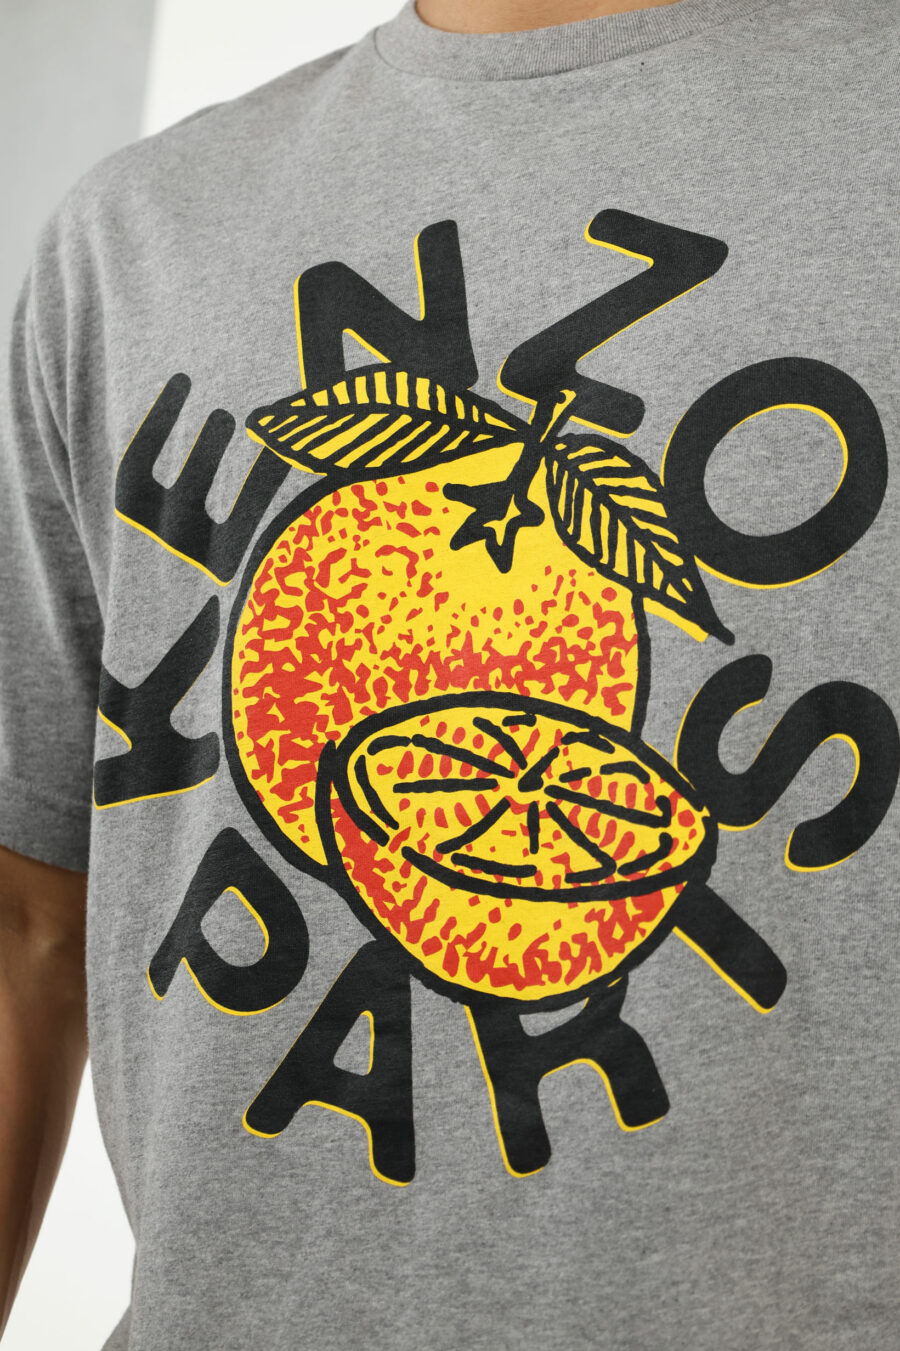 Camiseta gris con maxilogo "kenzo orange" - number13591